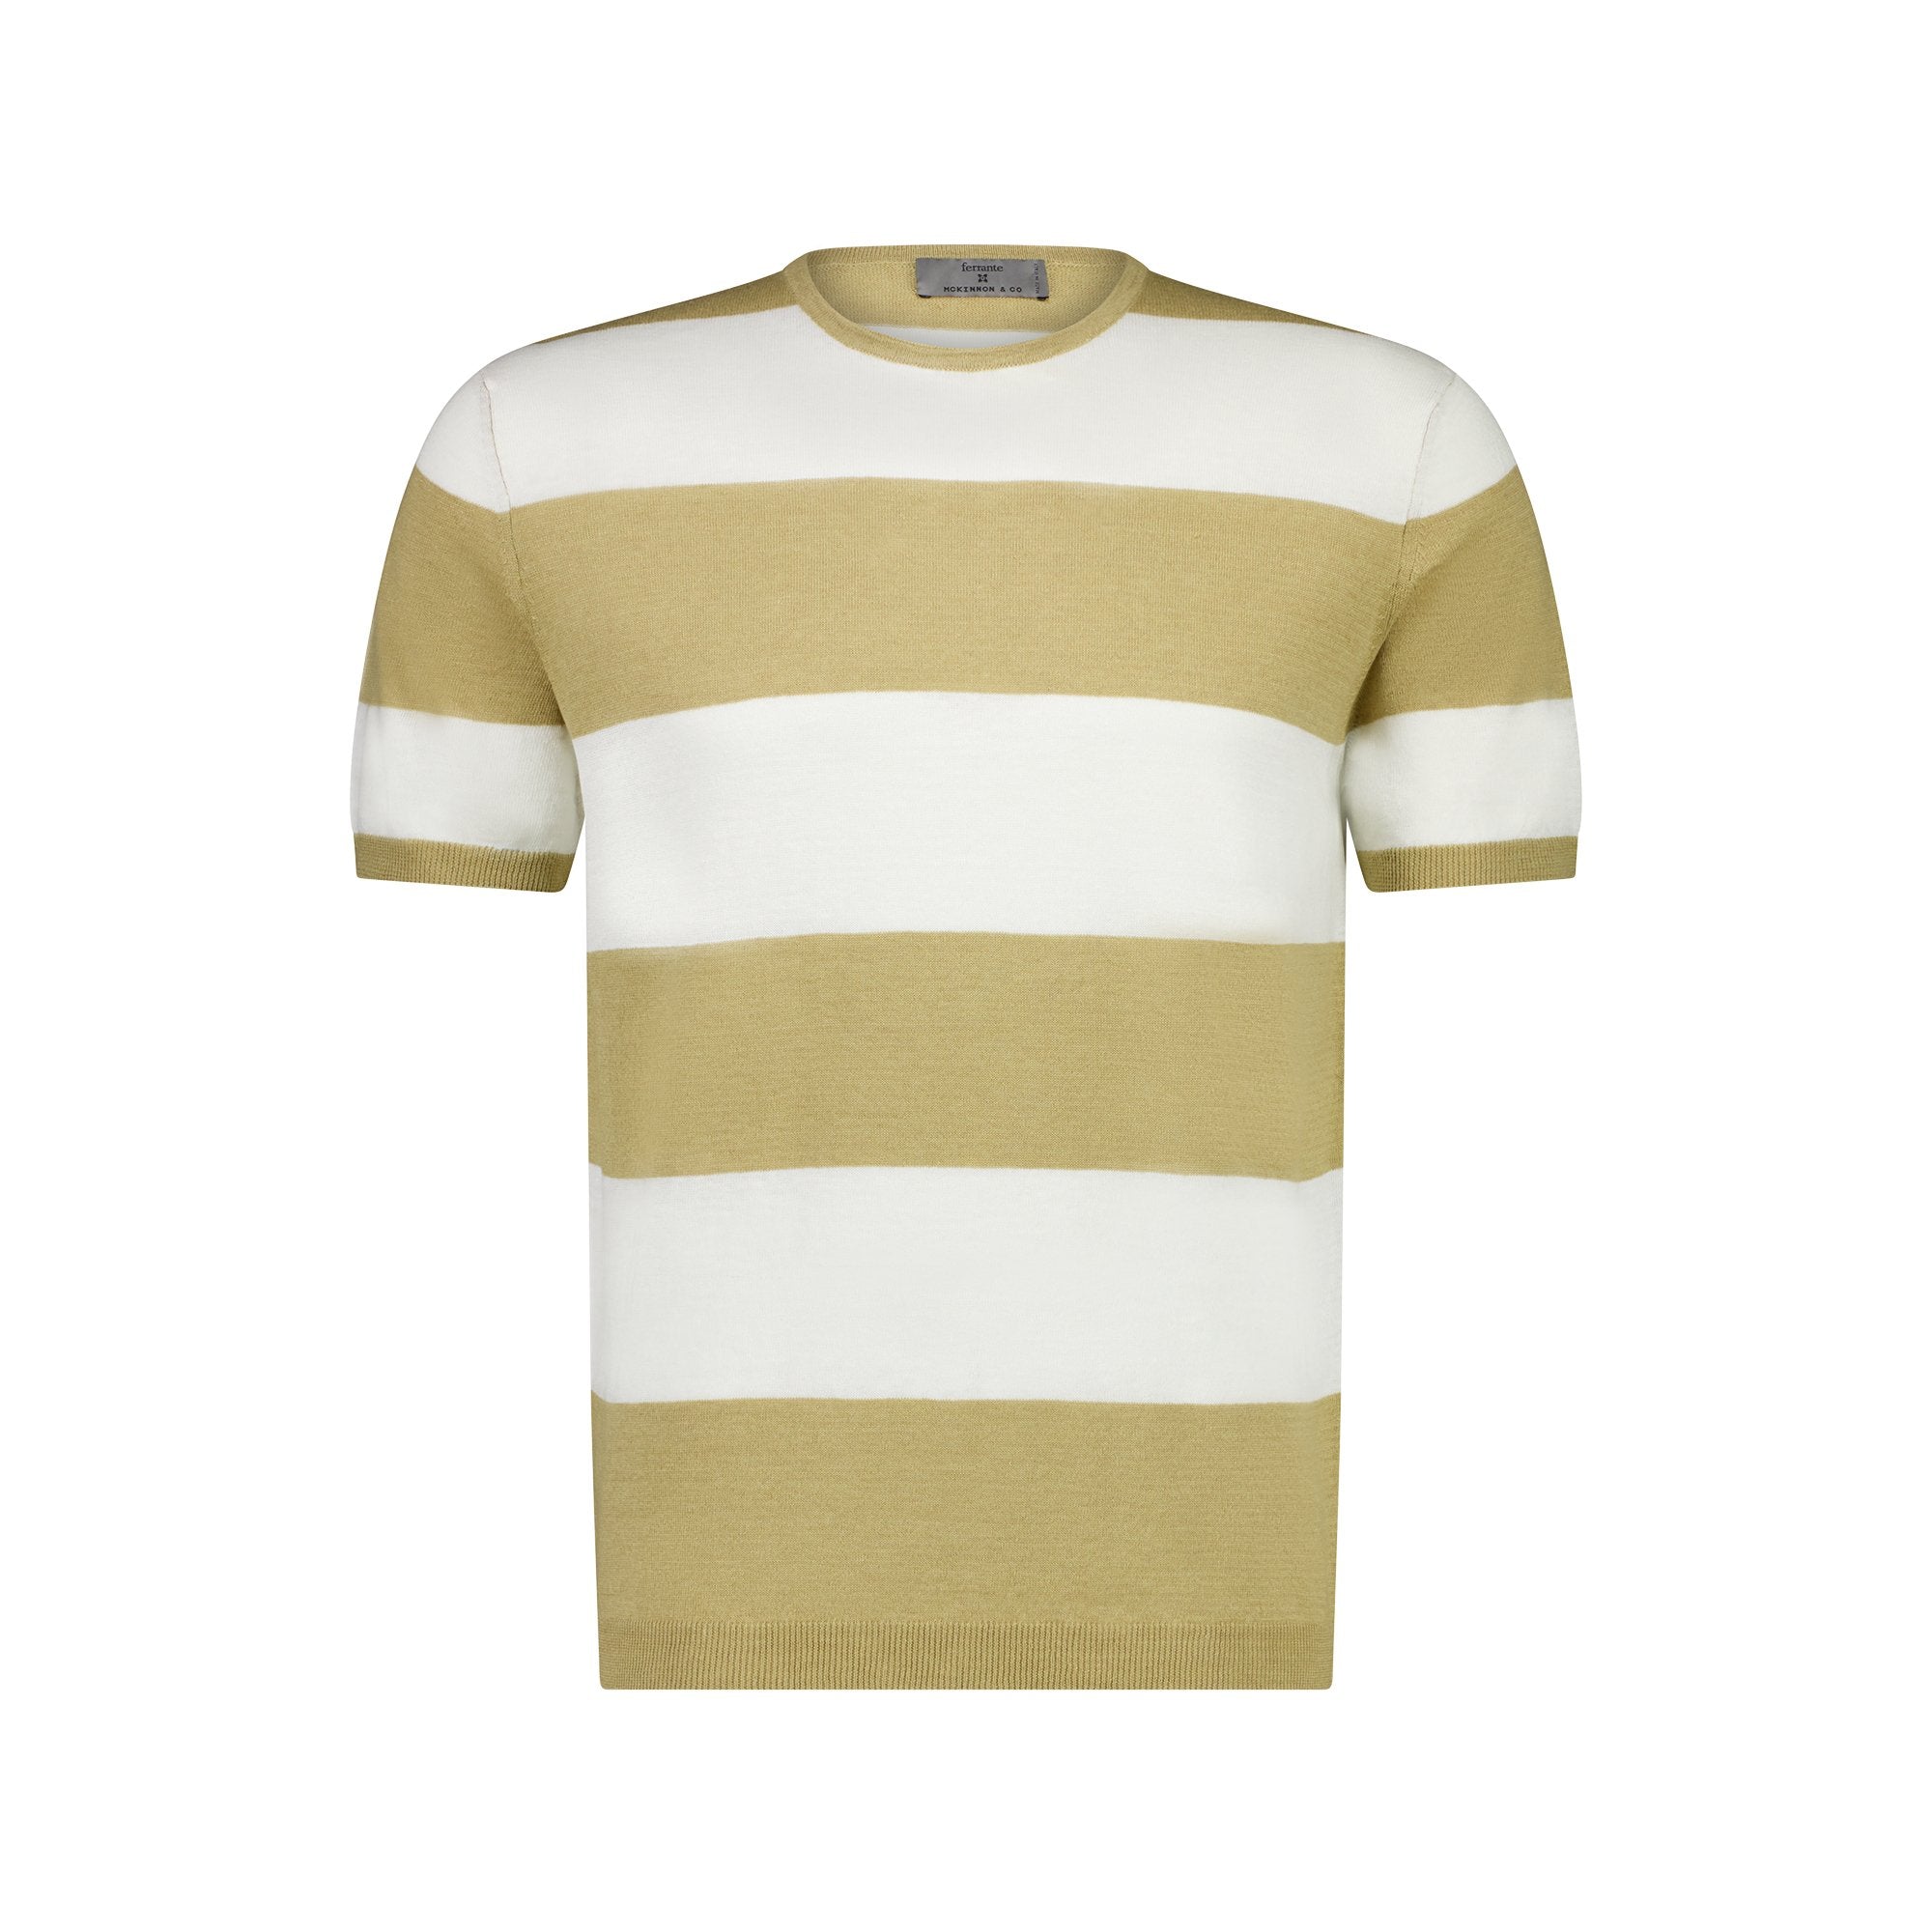 MCKINNON x FERRANTE Short Sleeve T - shirt SAND - Henry BucksT - Shirts38SS230068 - SAND - 50